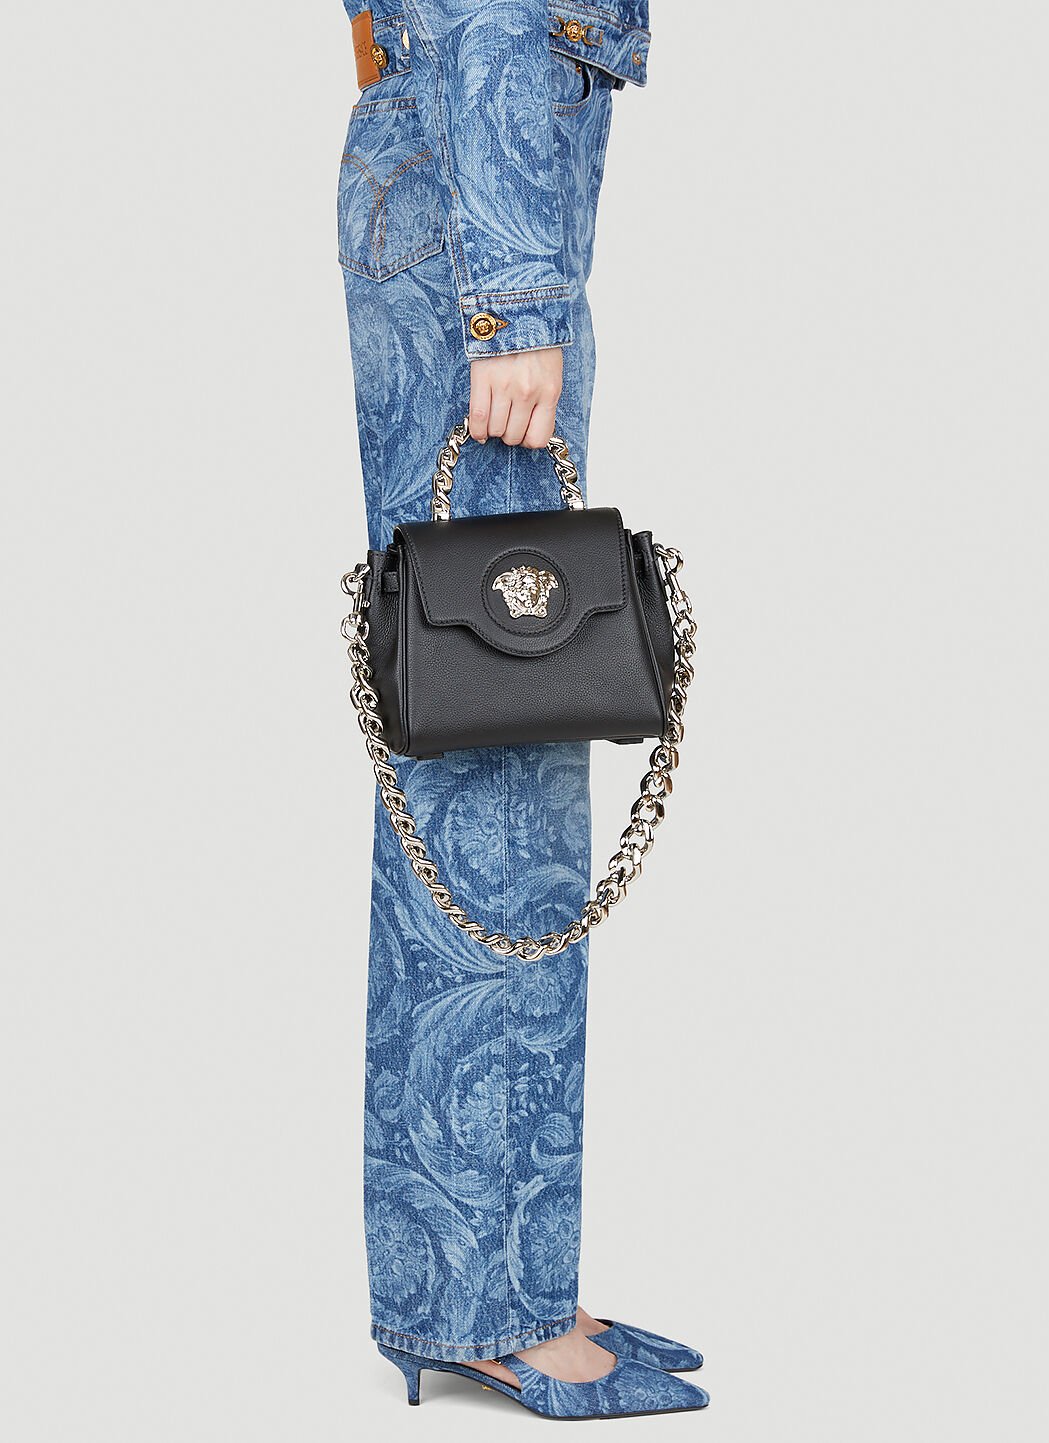 Versace メドゥーサ スモールハンドバッグ ブルー ver0255008